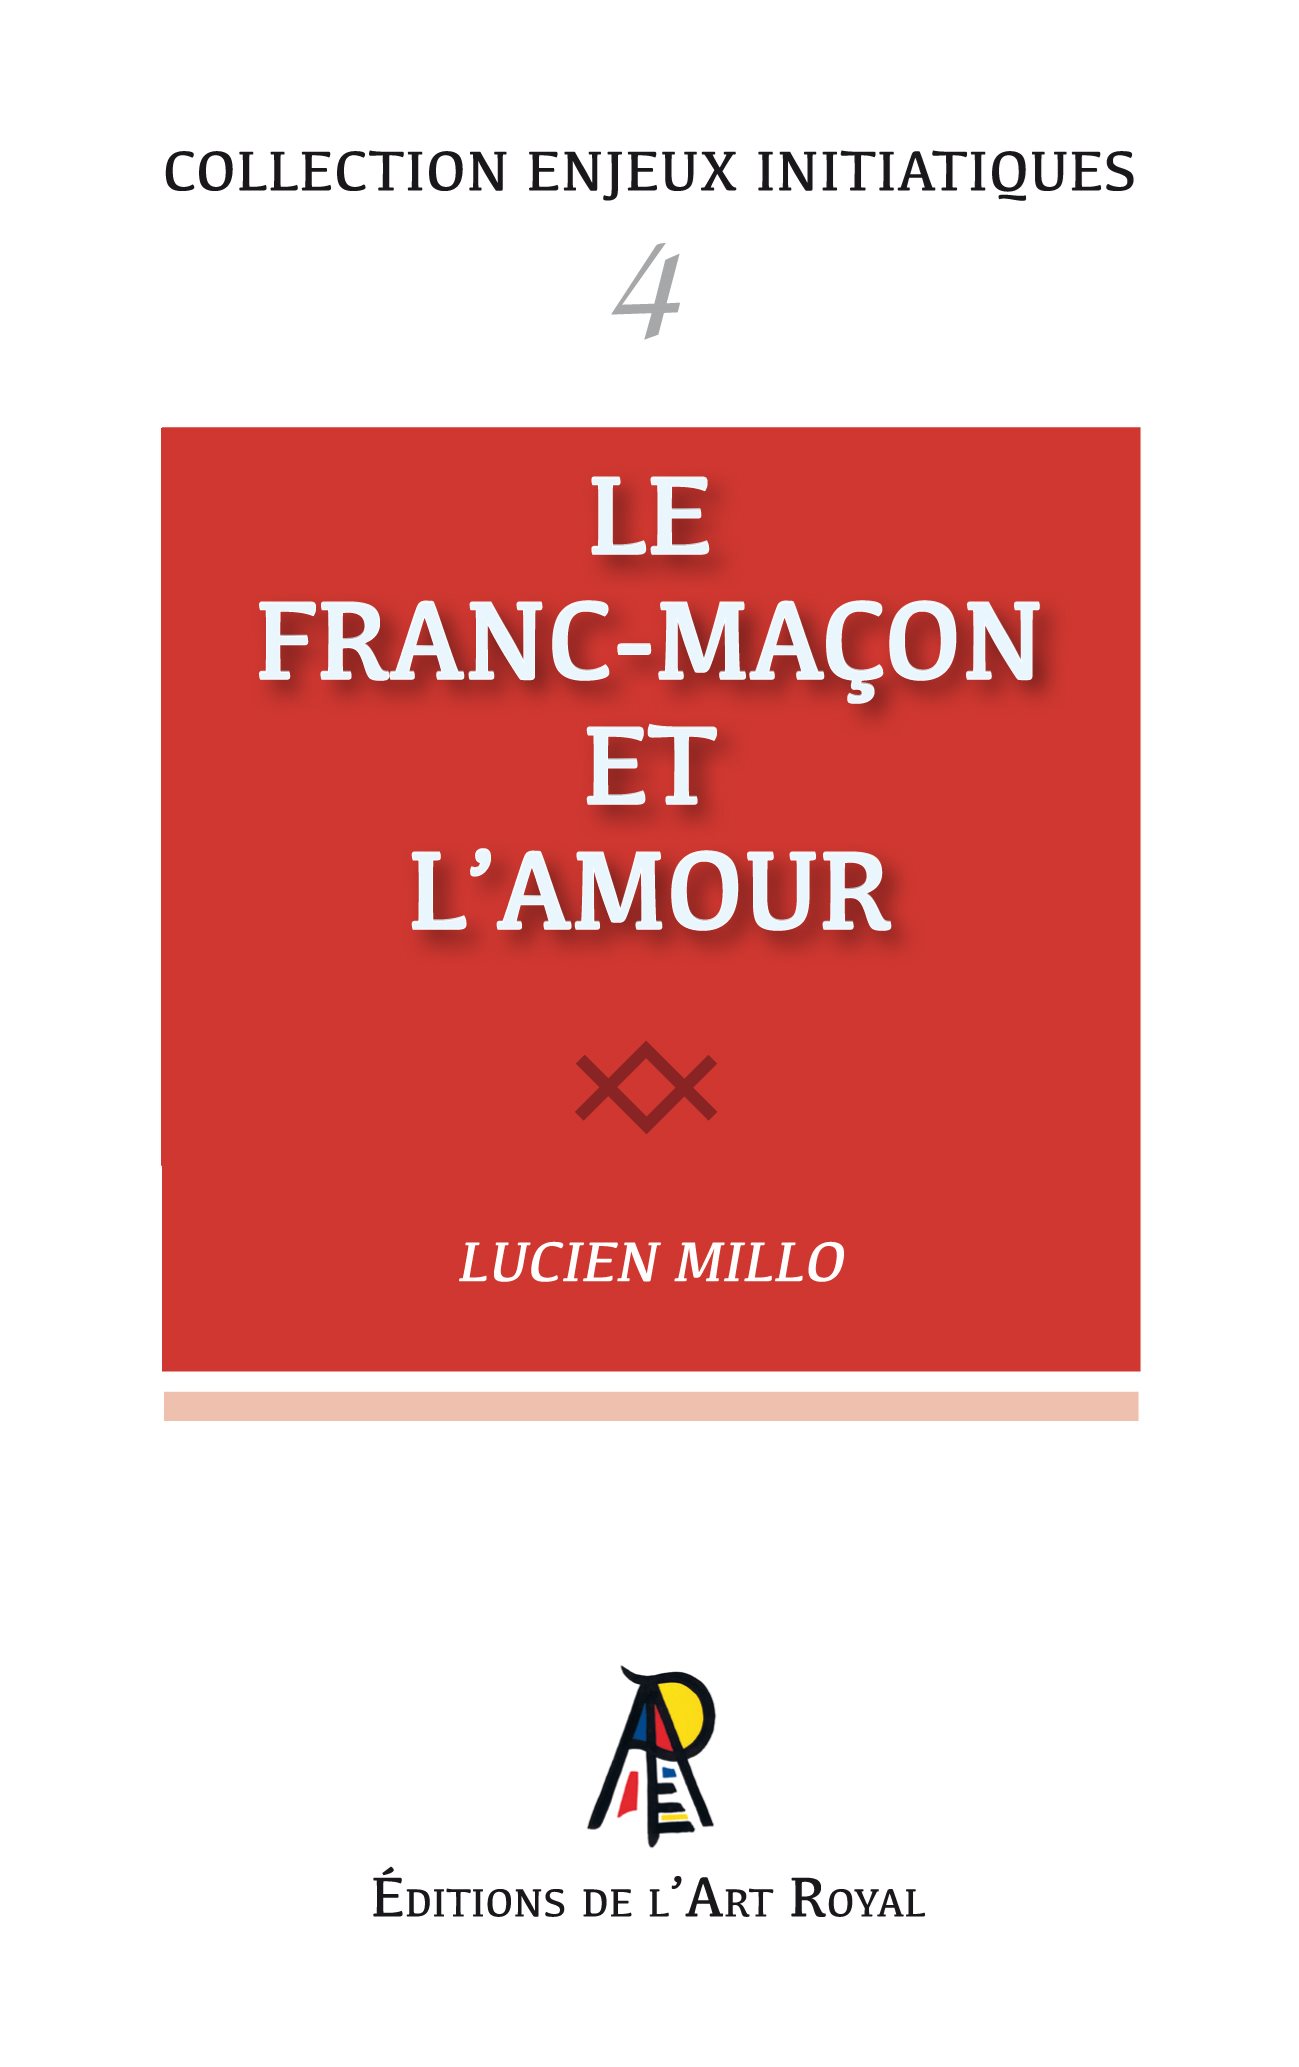 POUR LE MACON ET LE PLATRIER par HANOUILLE E.: bon Couverture souple (1959)